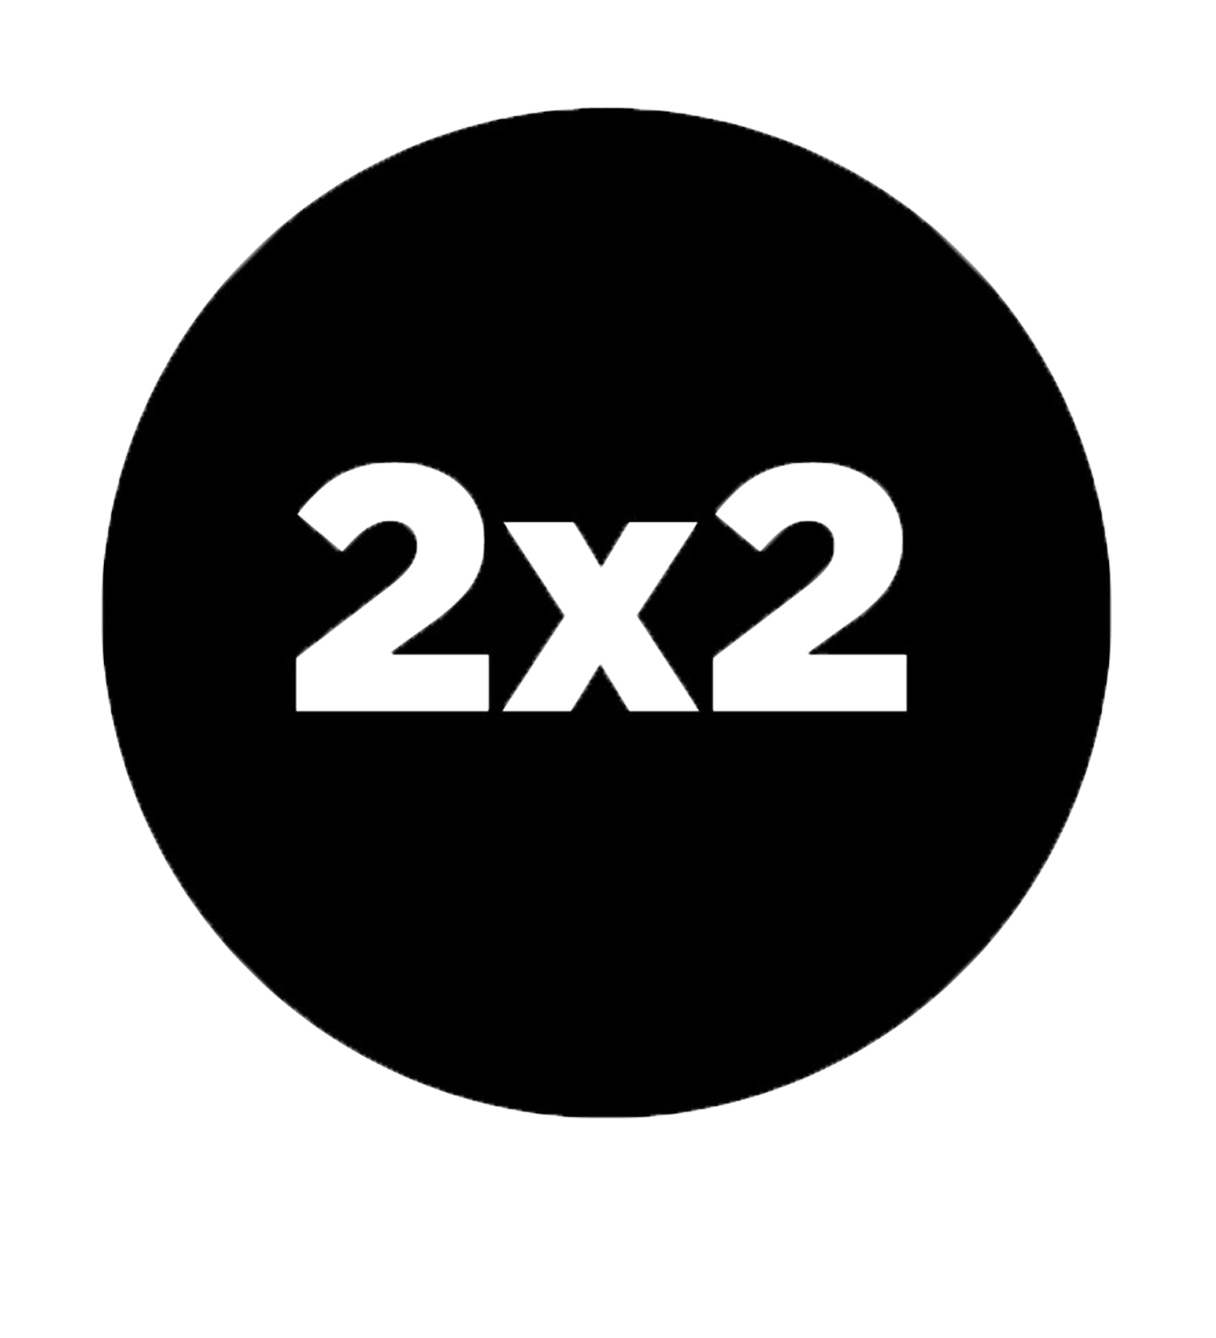 Канал 2х2 прямой эфир. 2х2 логотип. Дважды два логотип. Канал 2х2 логотип. Телеканал 2x2 логотип.